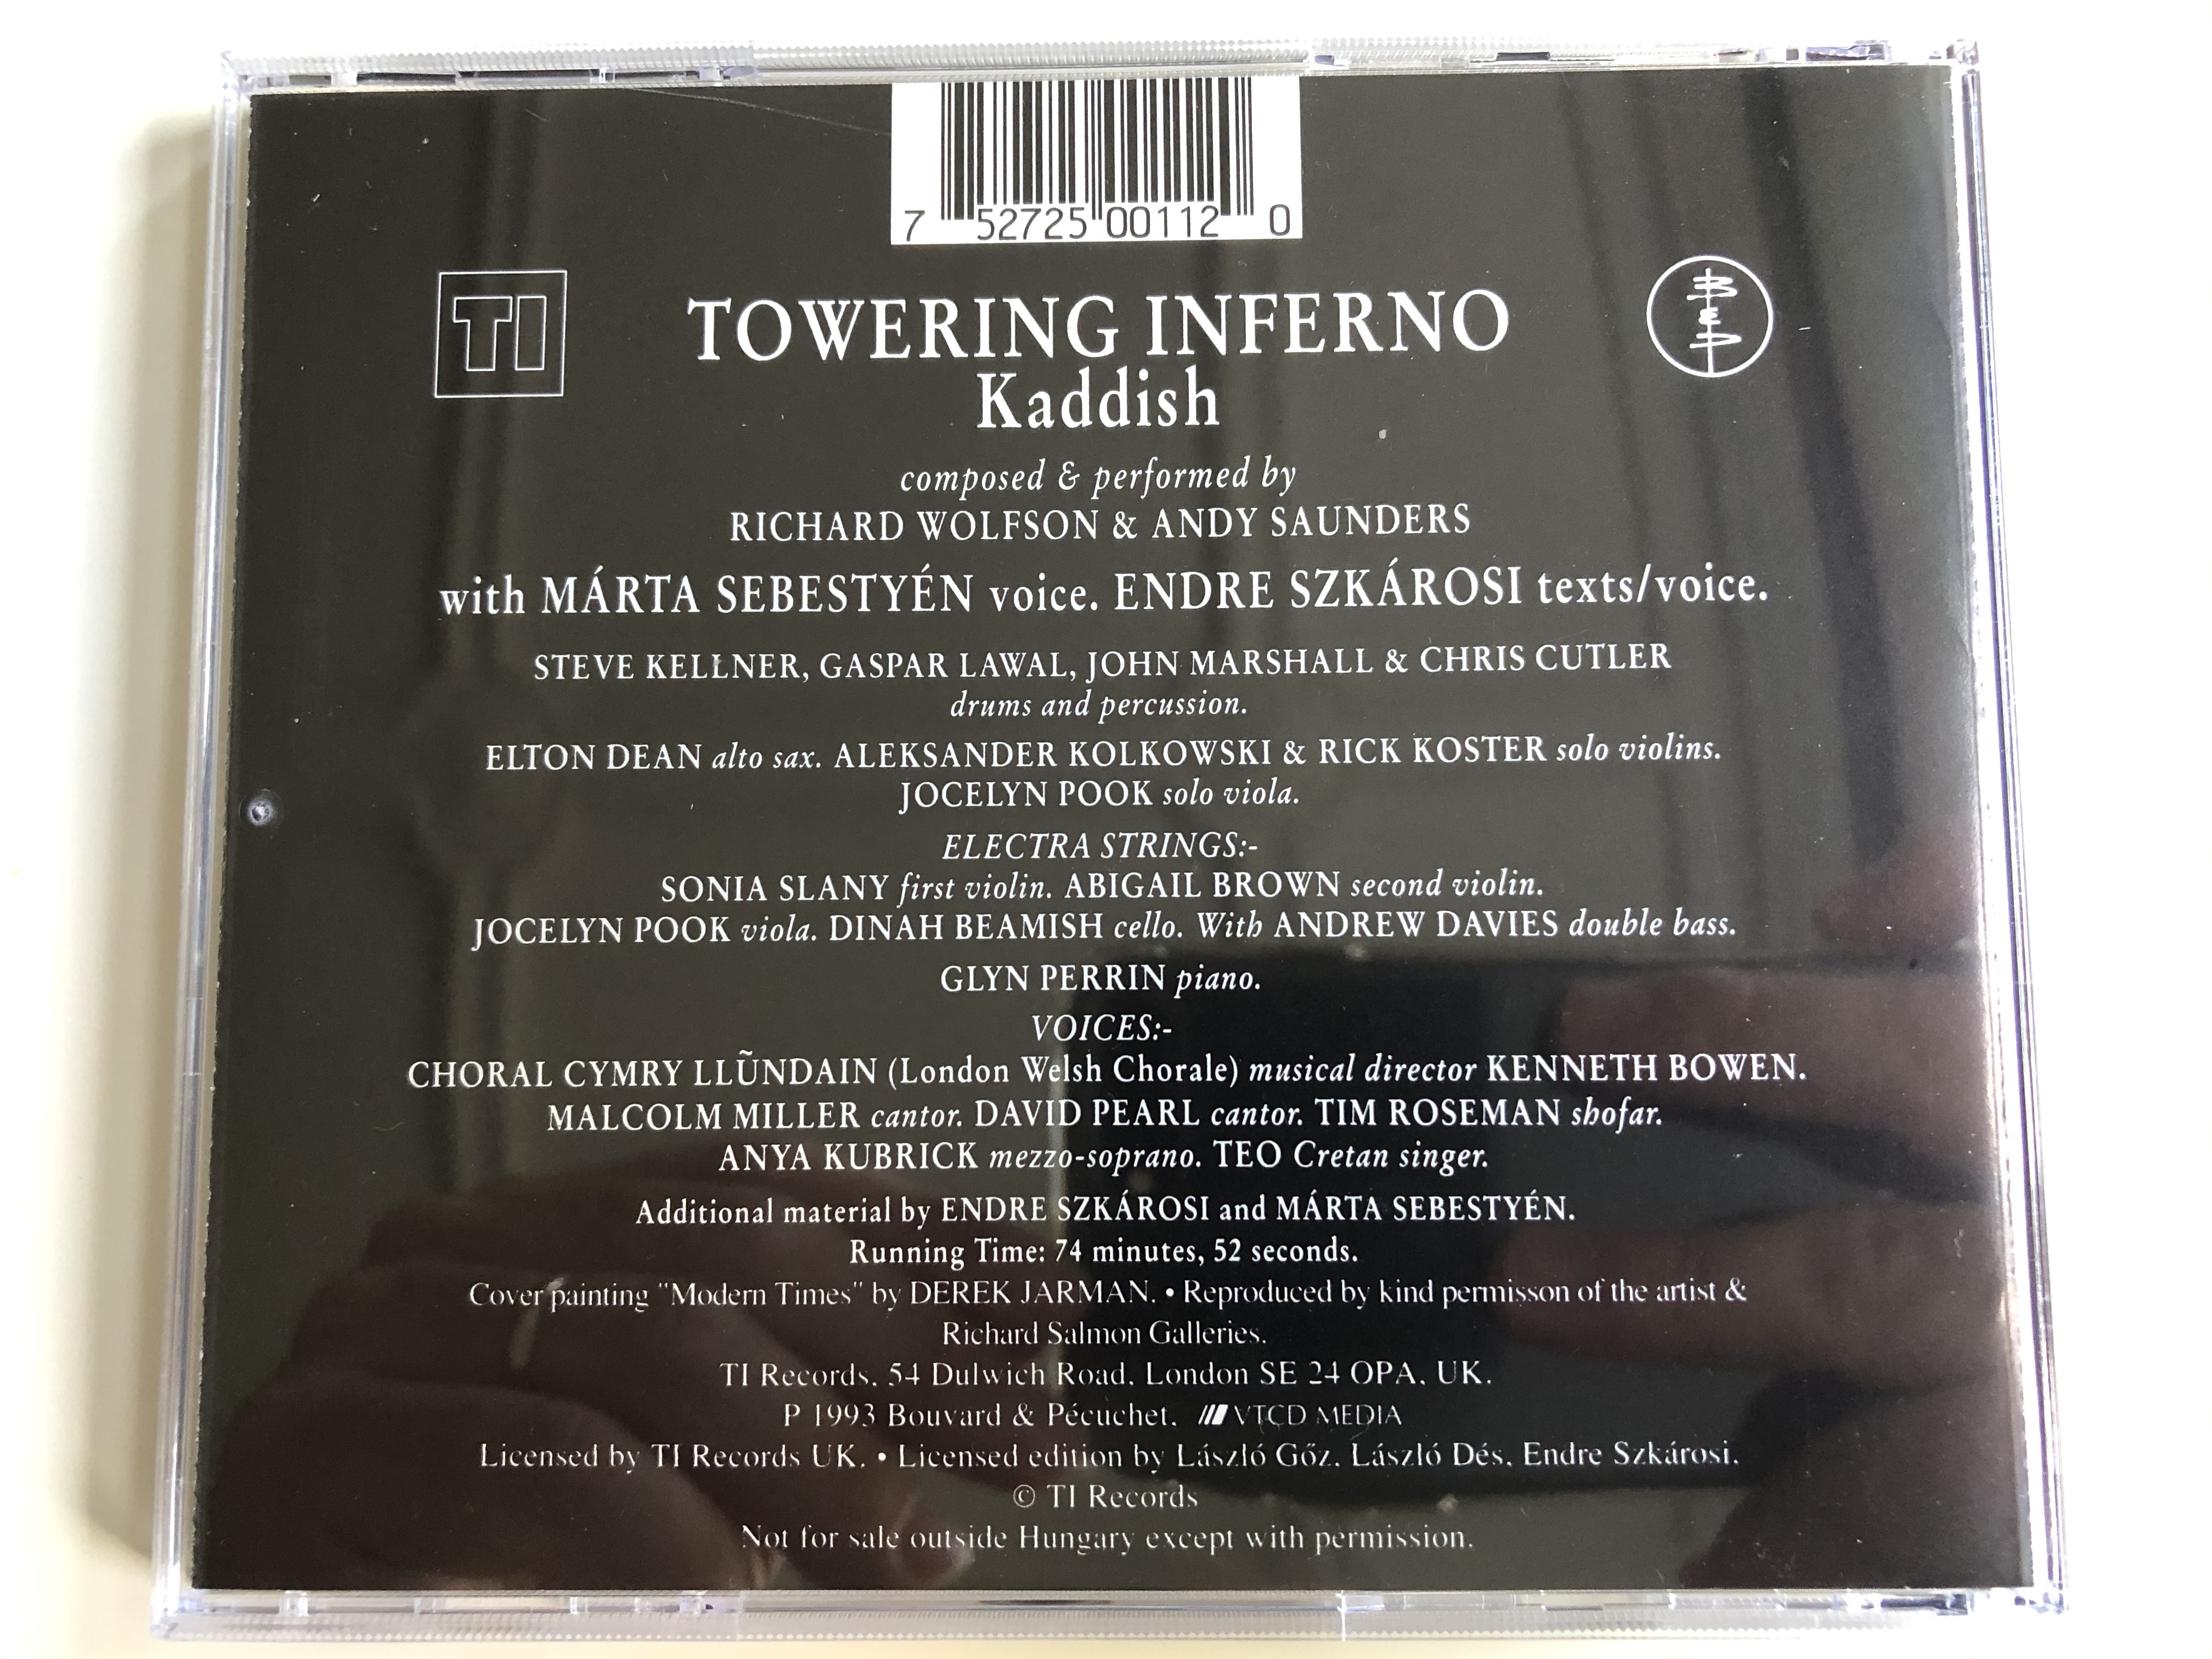 towering-inferno-kaddish-ti-records-audio-cd-1993-vbpl-016-6-.jpg